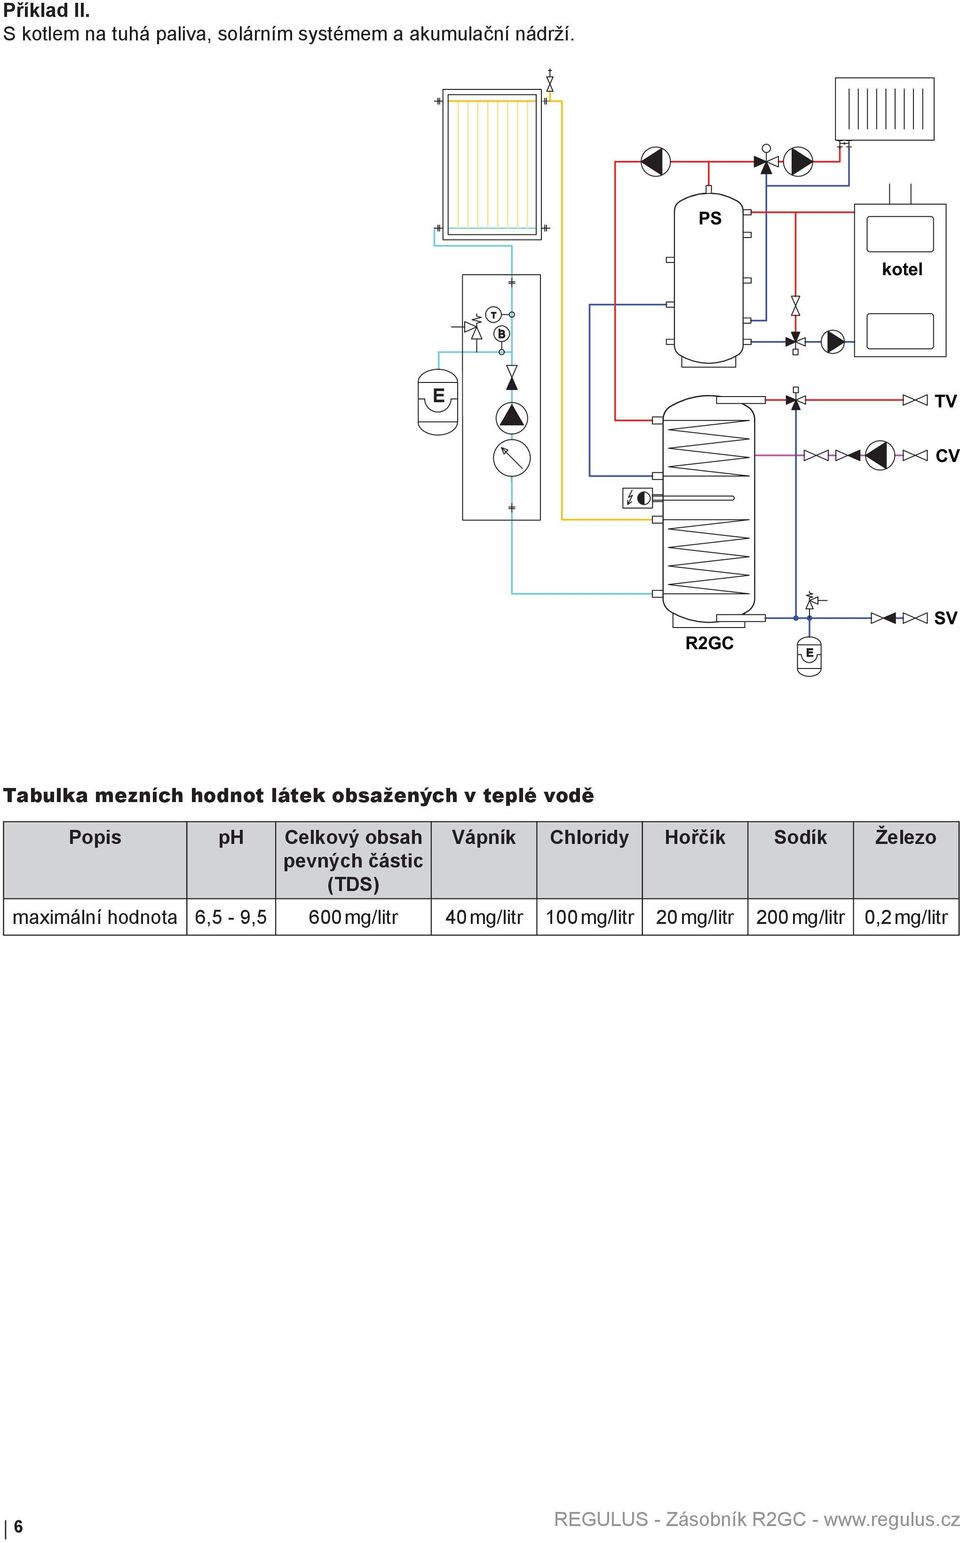 Popis ph Celkový obsah pevných částic (TDS) Vápník Chloridy Hořčík Sodík Železo